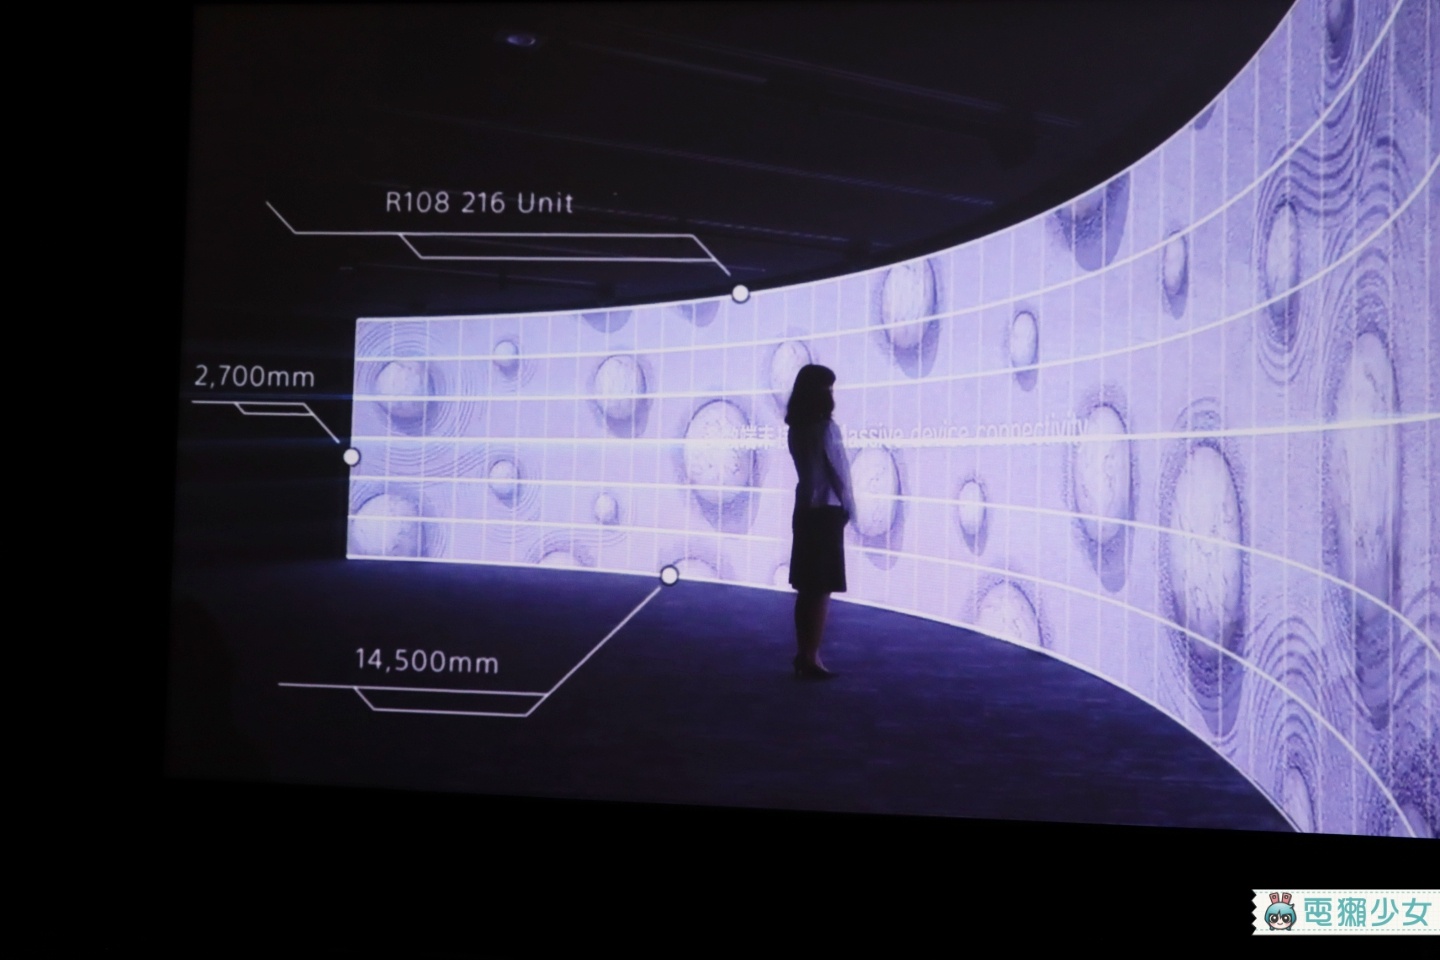 出門｜想要多大的電視螢幕都能客製！Sony推出4K專業顯示方案 要給你最好的視覺體驗